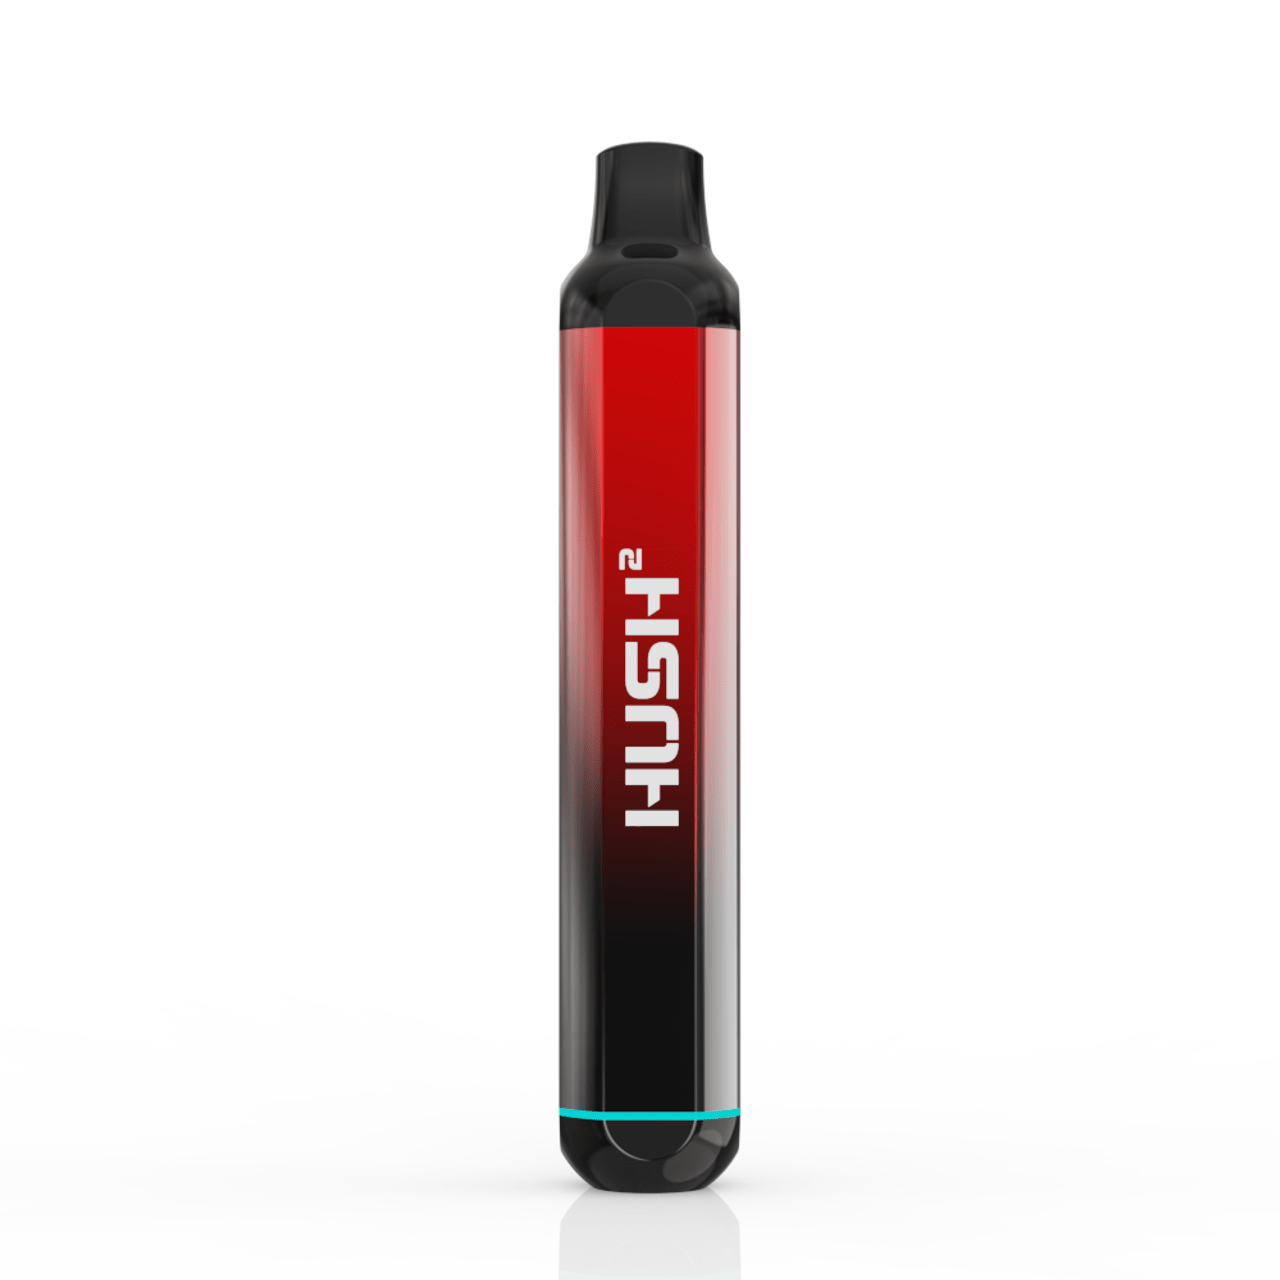 Hush2 Oil Vaporizer - VAPEPUB